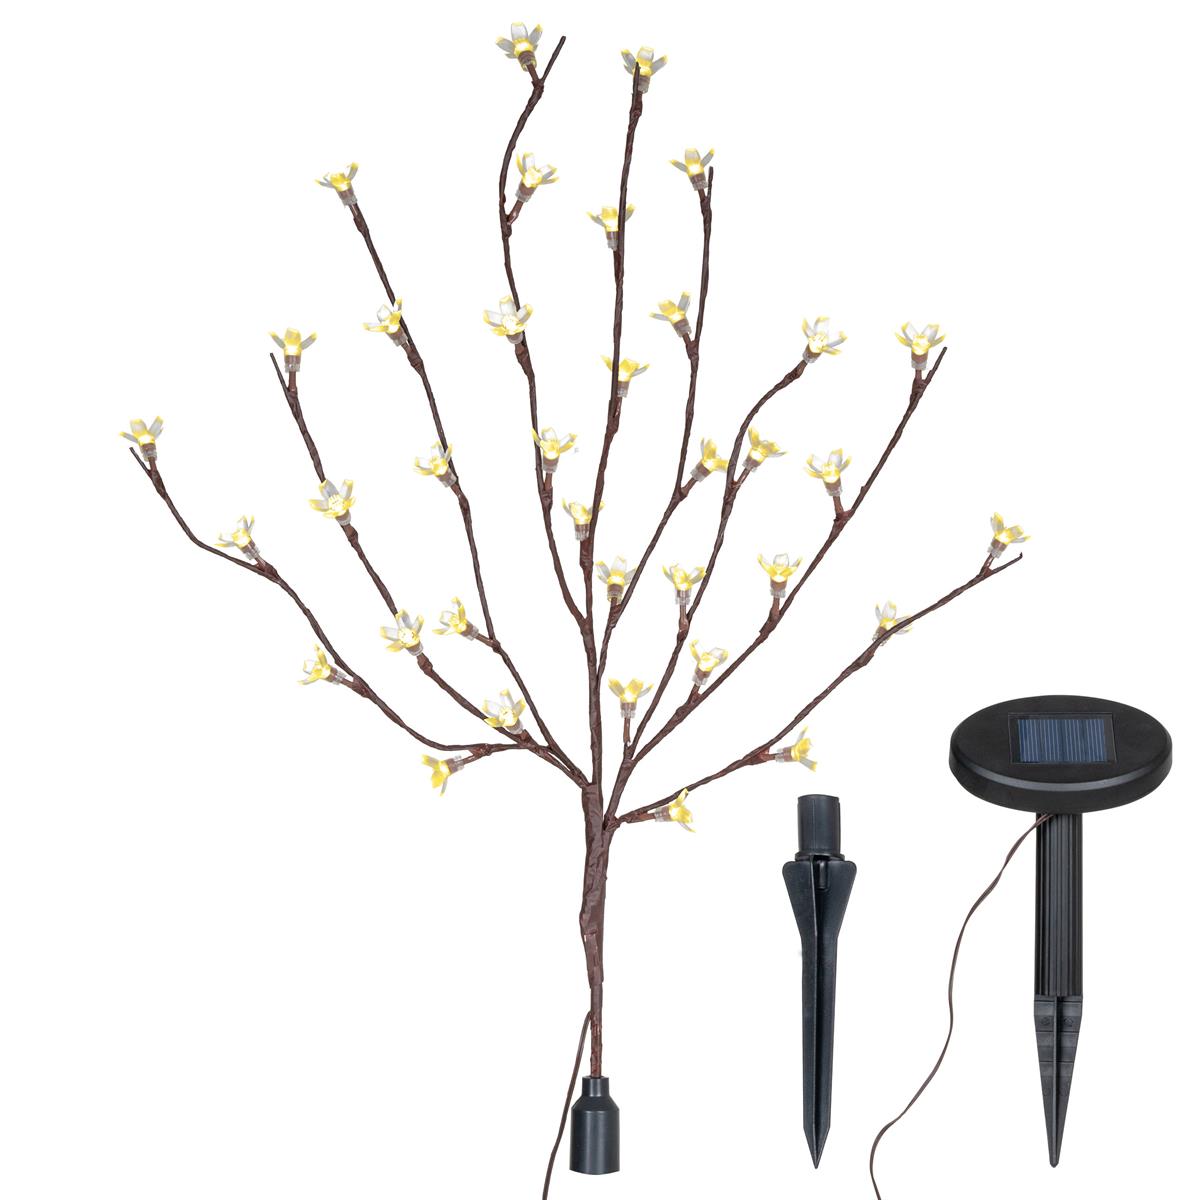 Solarlampe LED Leuchtbaum 36 LEDs warmweiß Zweig mit Blüten Blinkfunktion